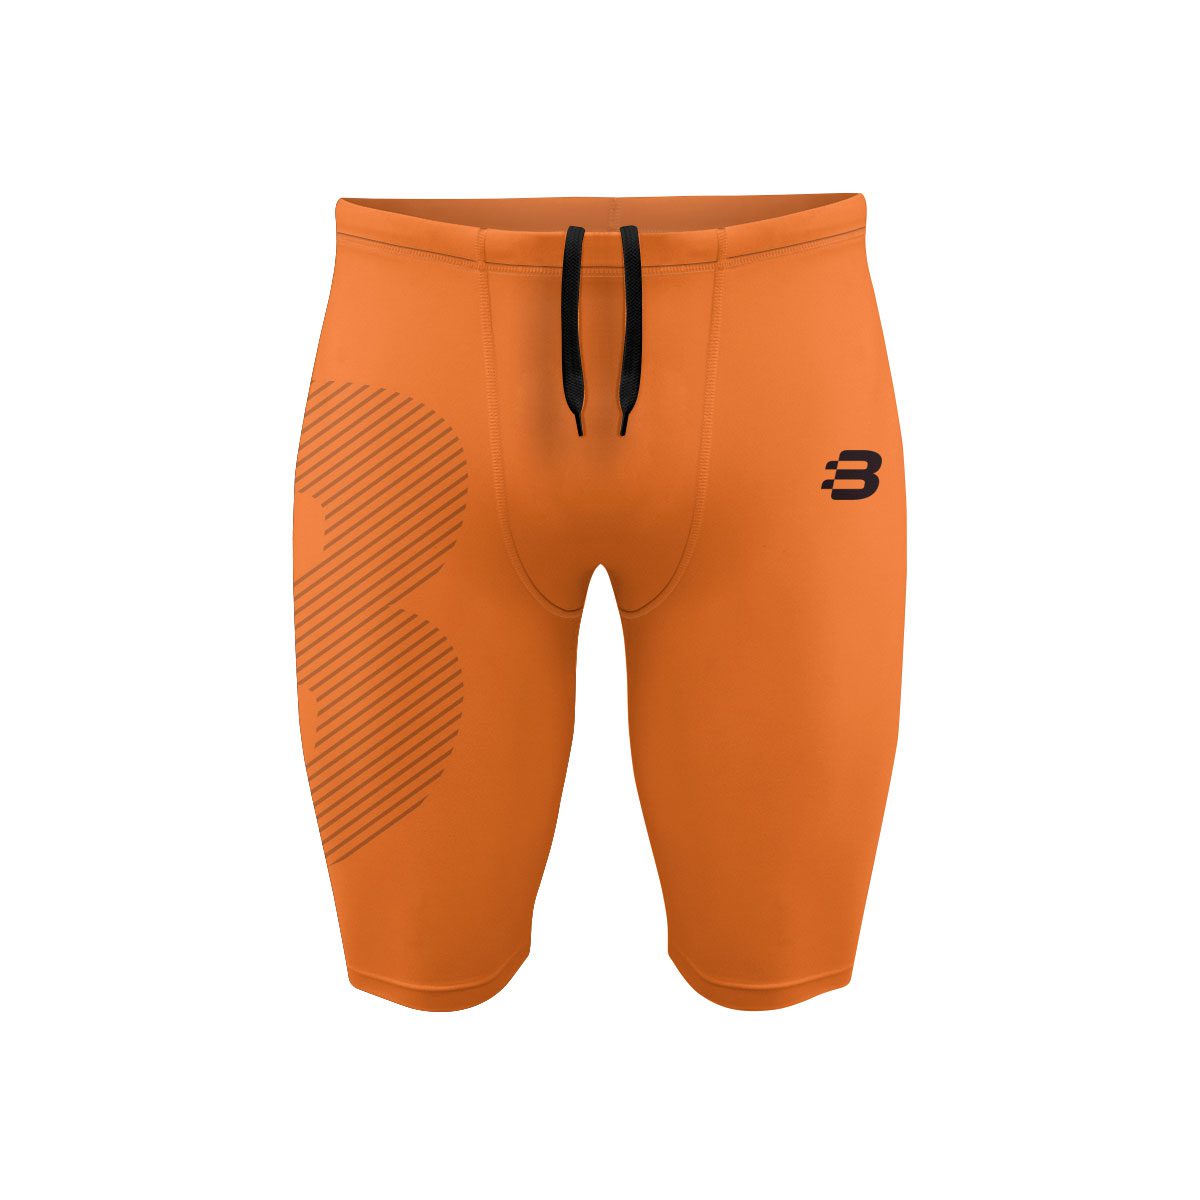 15 Best Orange Compression Shorts For 2023